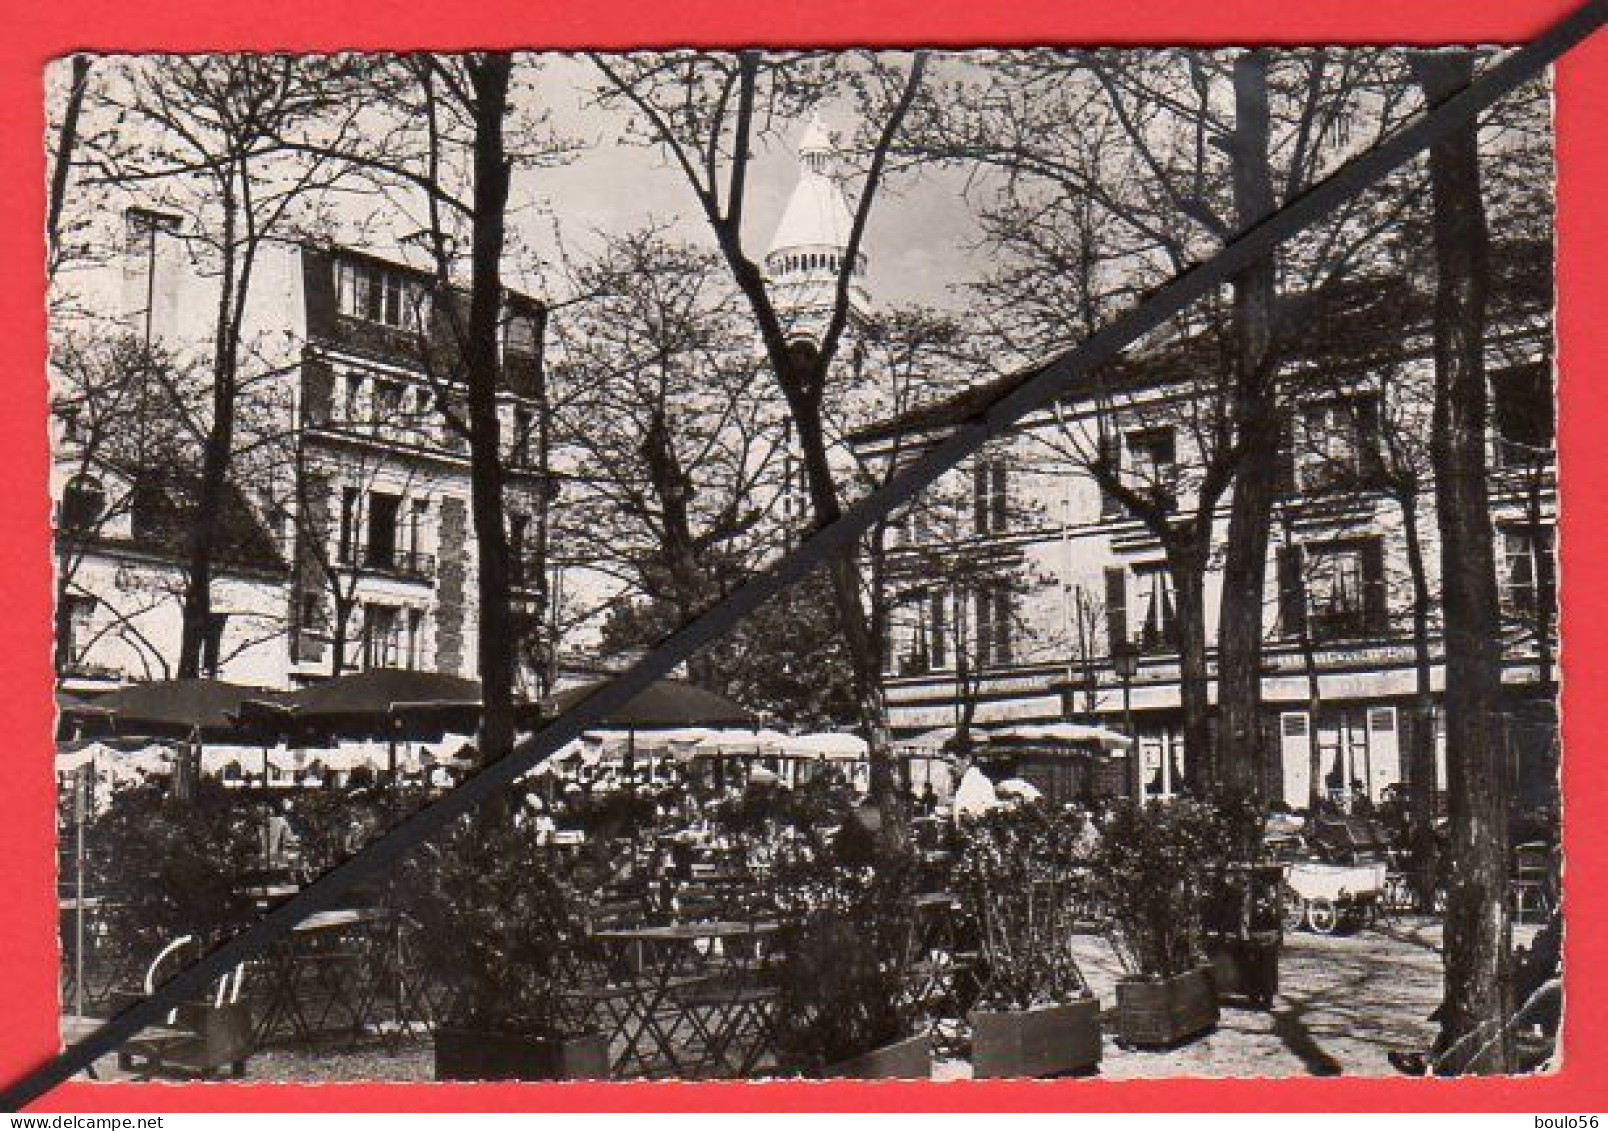 CPSM-(Lots -Vrac)5-99-9Cartes-PARIS-la Tour EFFEL-1956-Monmartre Pl Du Tertre-1955.-Paris La Nuit.1957."1964.-1963.----- - 5 - 99 Postkaarten